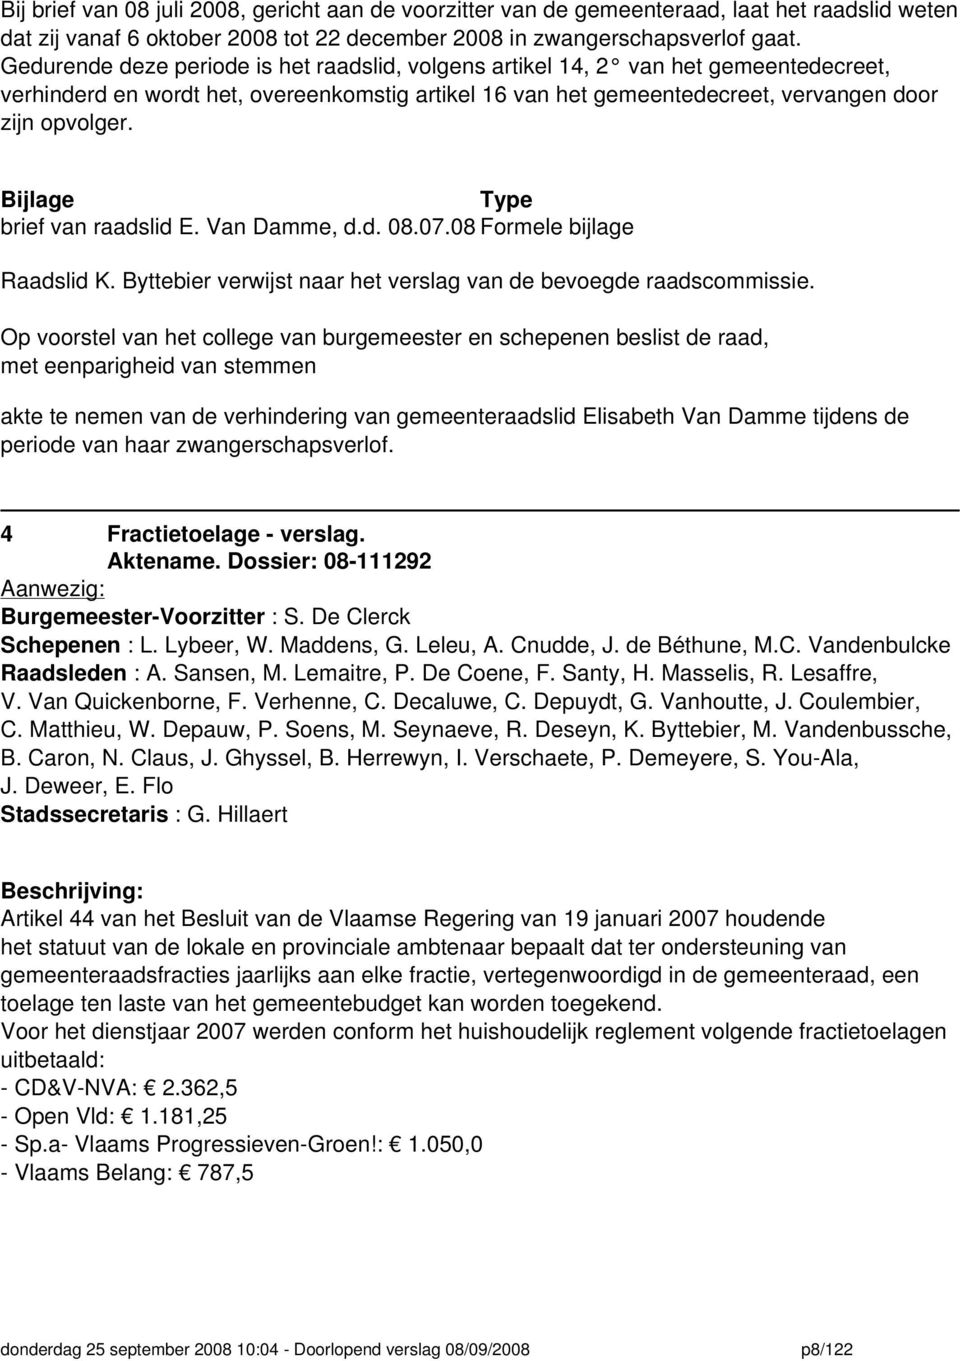 Bijlage Type brief van raadslid E. Van Damme, d.d. 08.07.08 Raadslid K. Byttebier verwijst naar het verslag van de bevoegde raadscommissie.